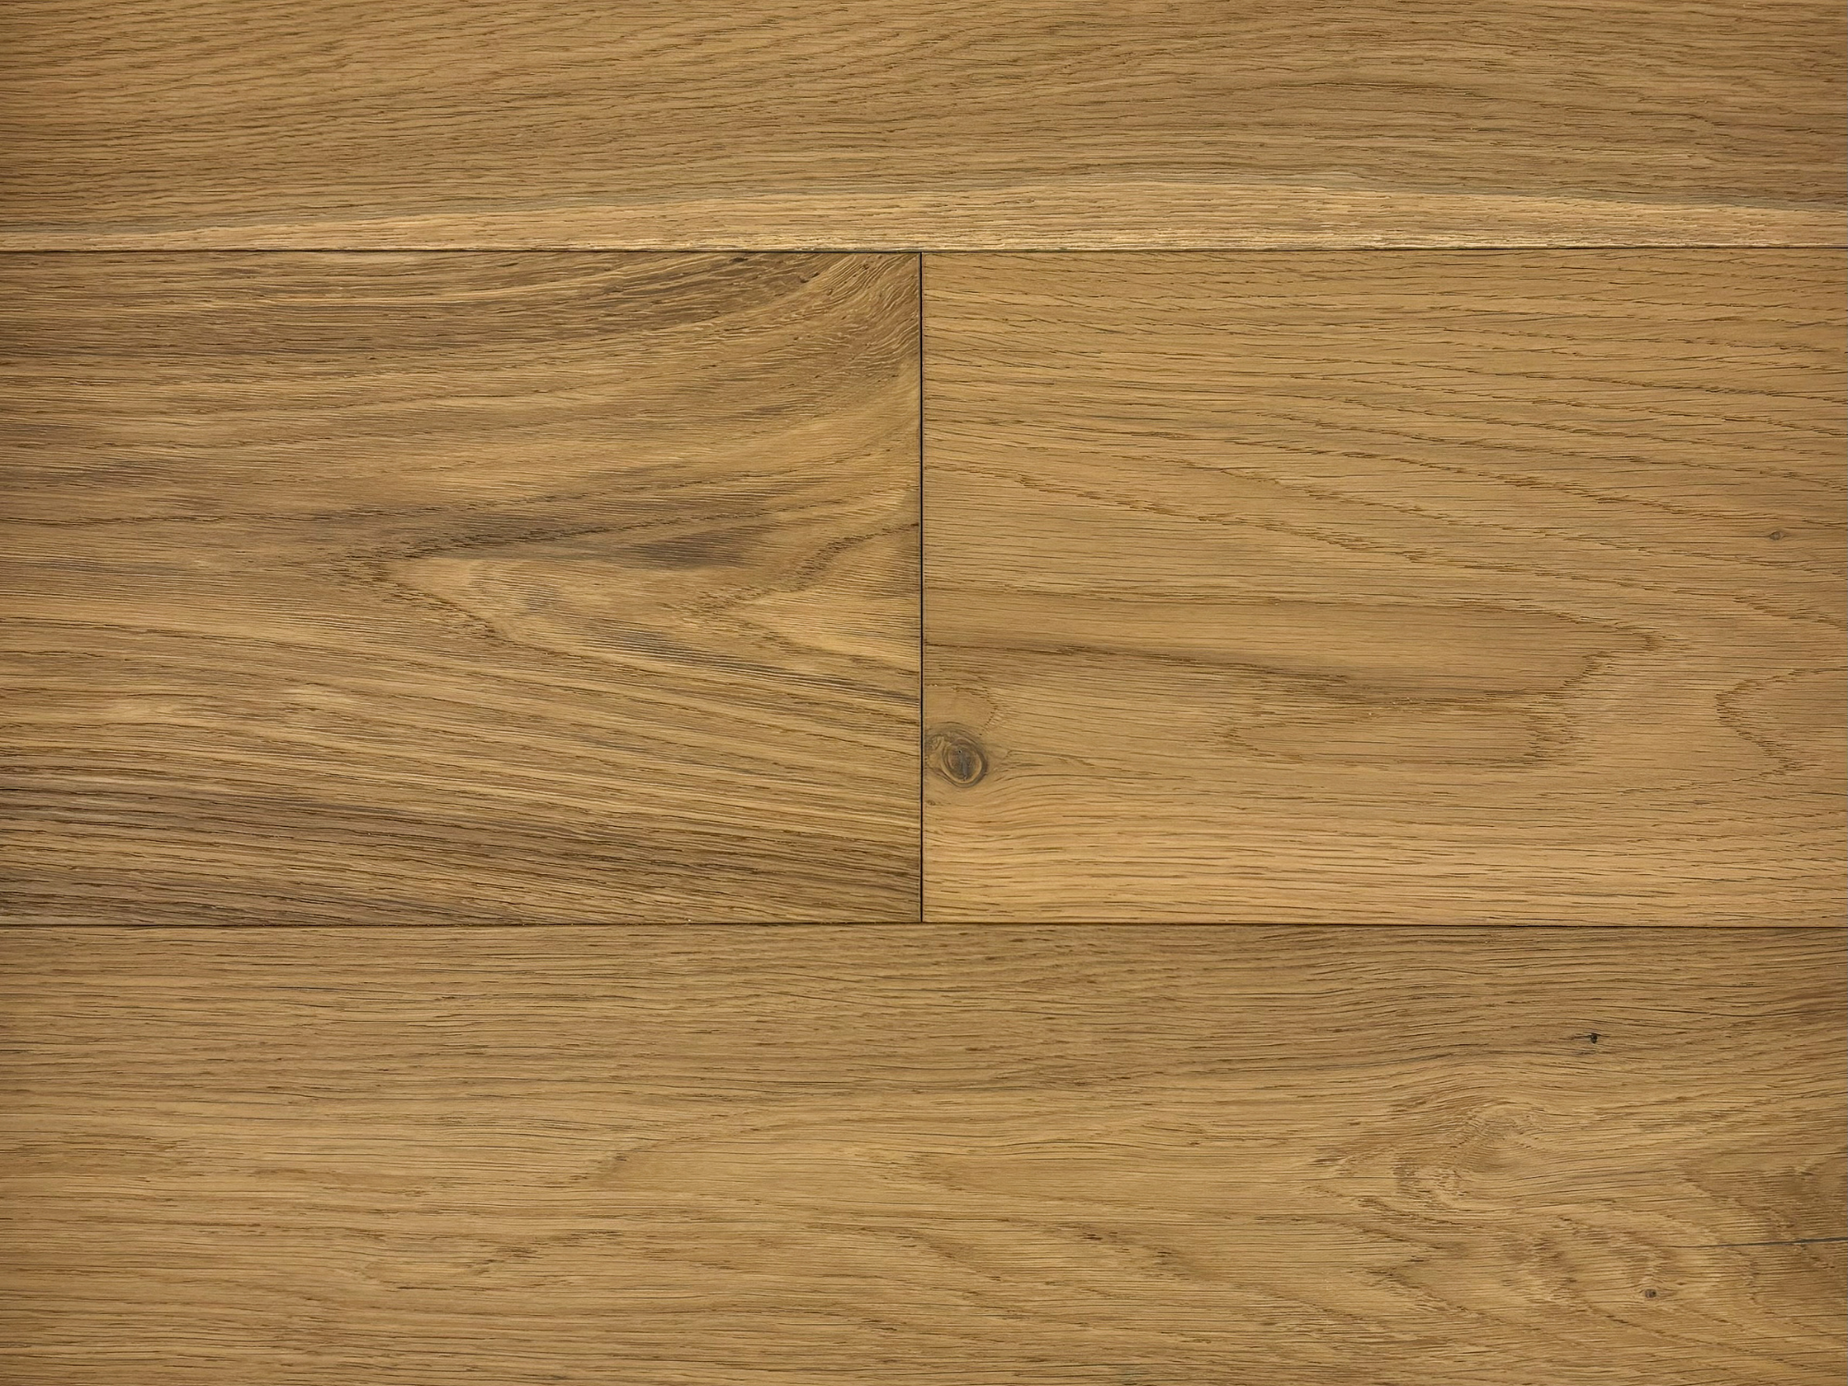 COLLAGE | Engineered Hardwood by Pravada Floors